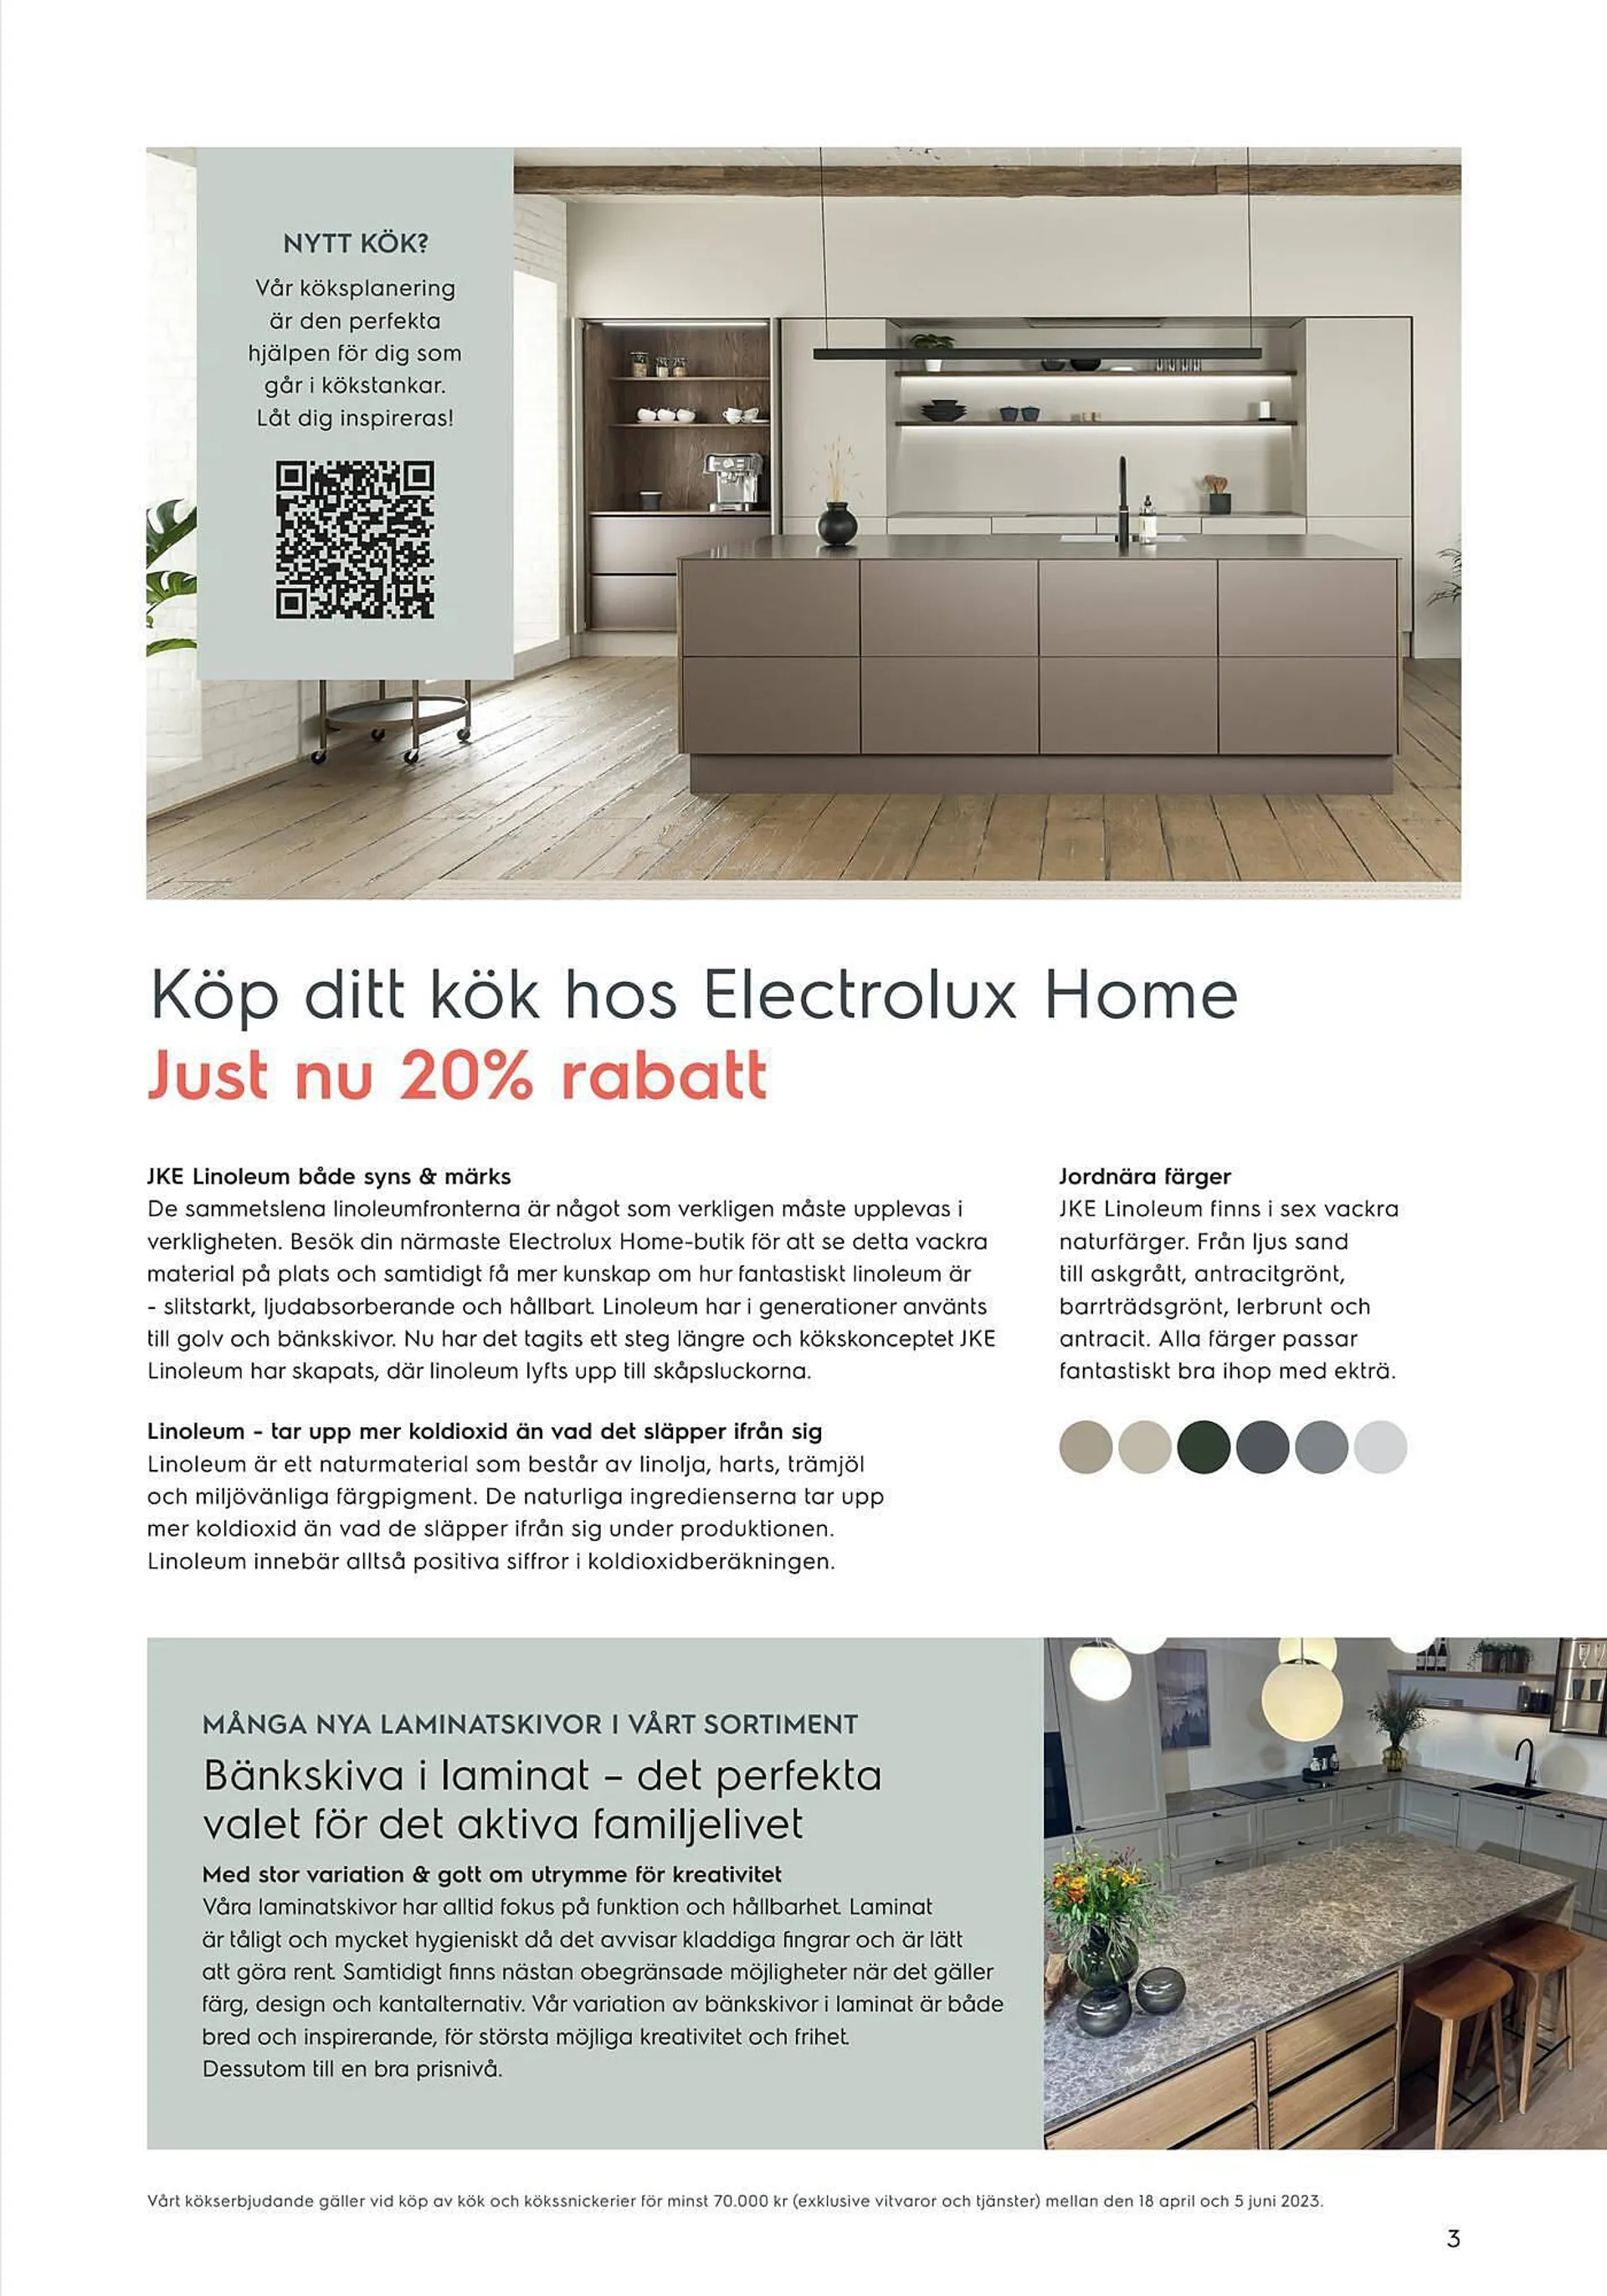 Electrolux Home reklamblad - 3